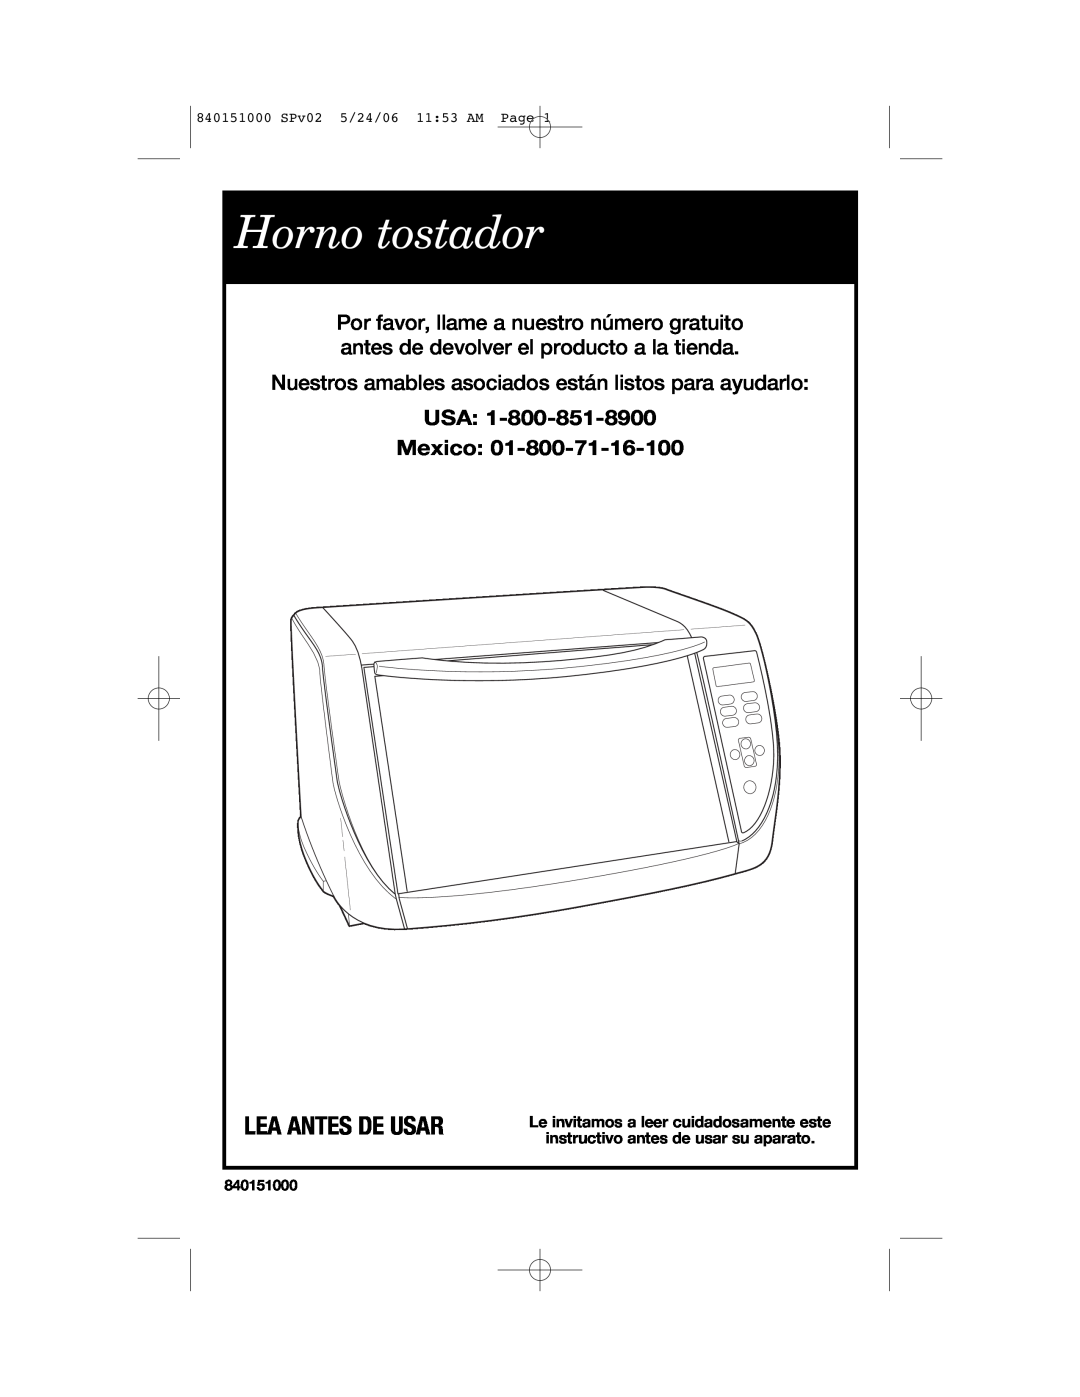 Hamilton Beach 840151000 manual Horno tostador, Lea Antes De Usar, USA Mexico 